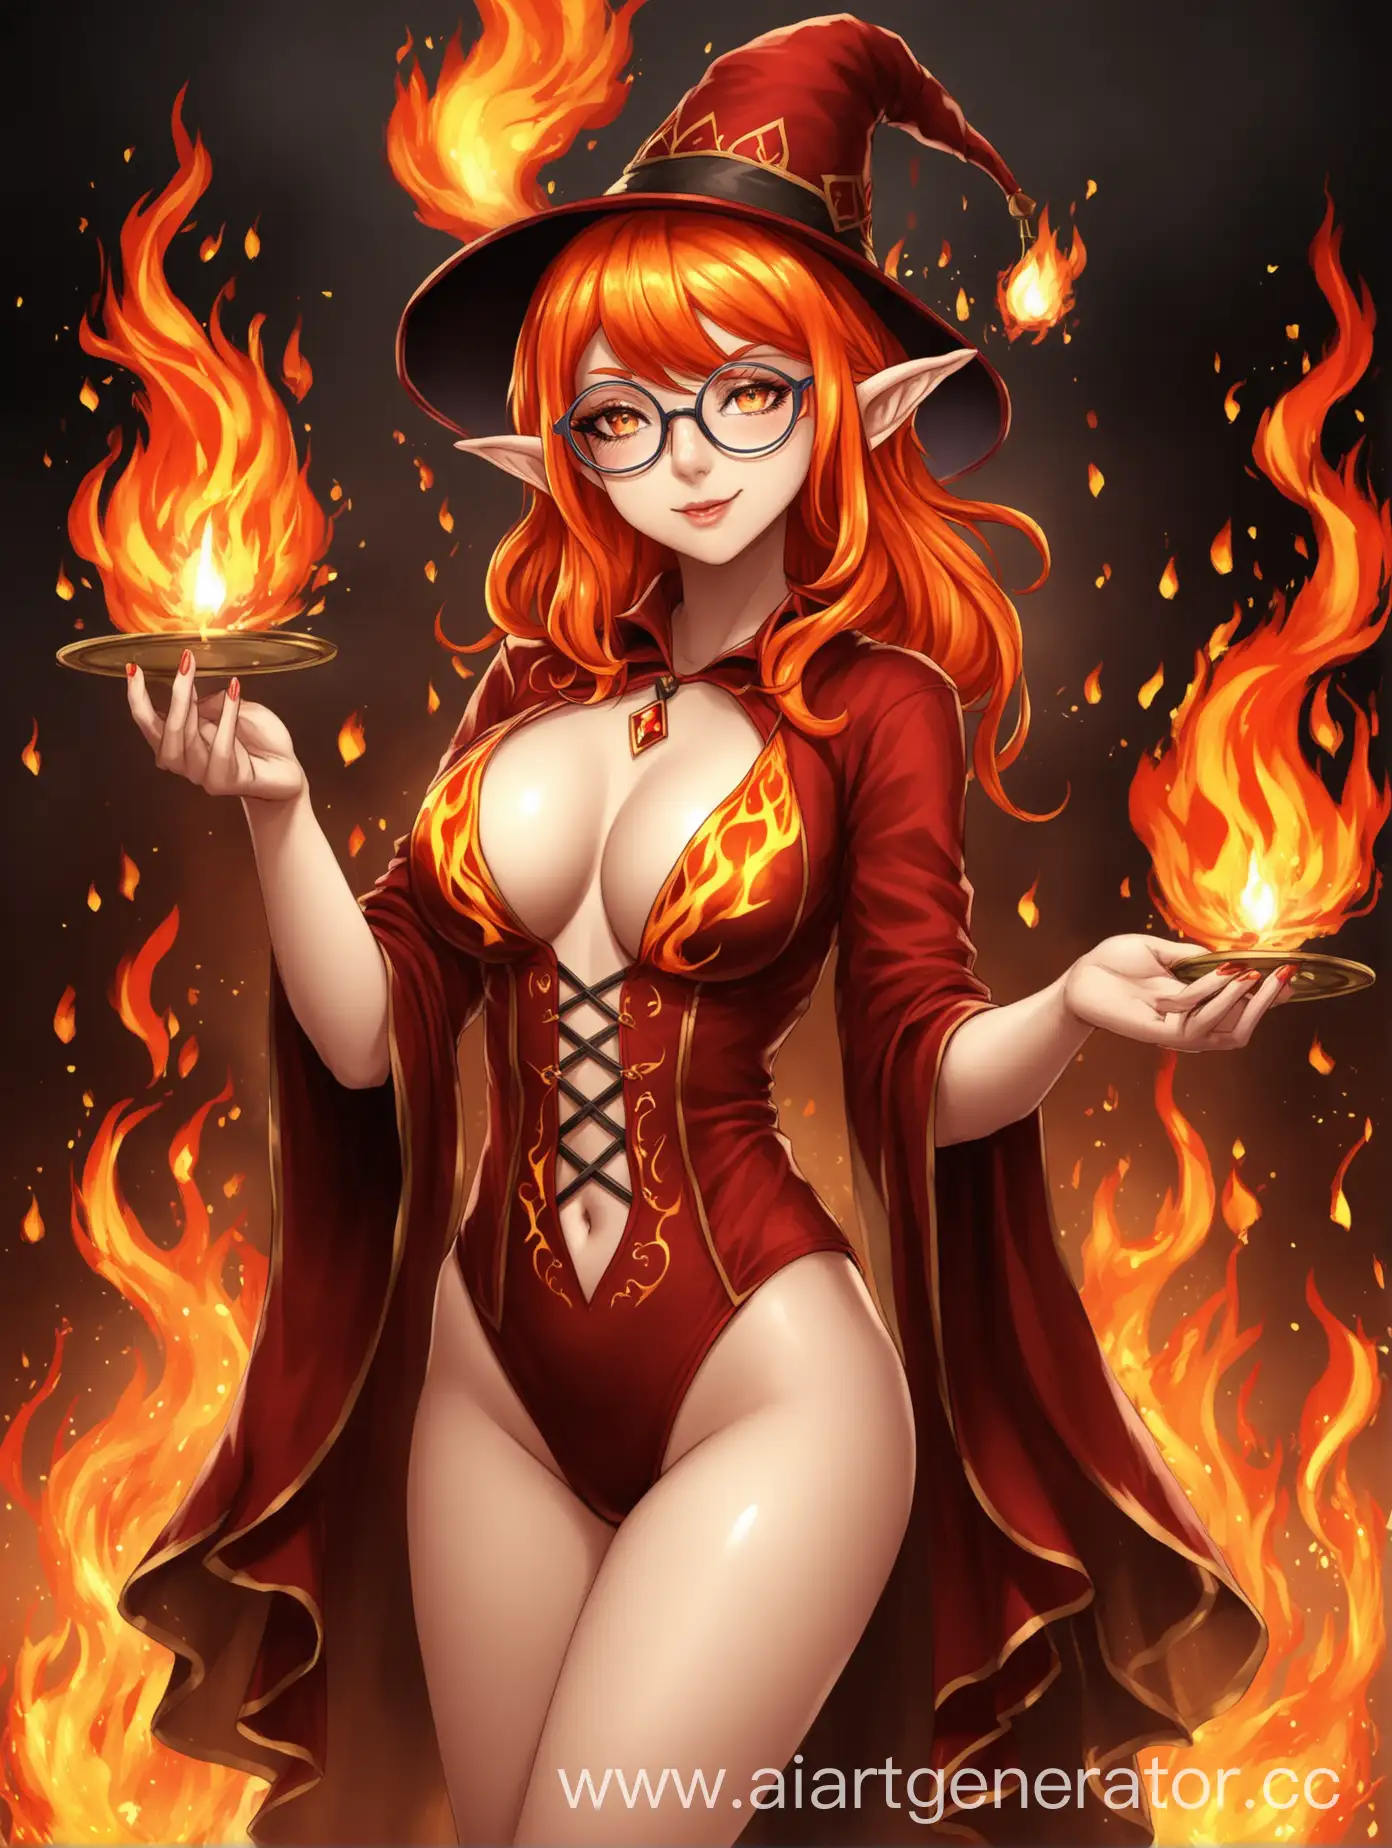 Fire-Elfin-Magician-in-Glasses-Casting-Enchanting-Spells